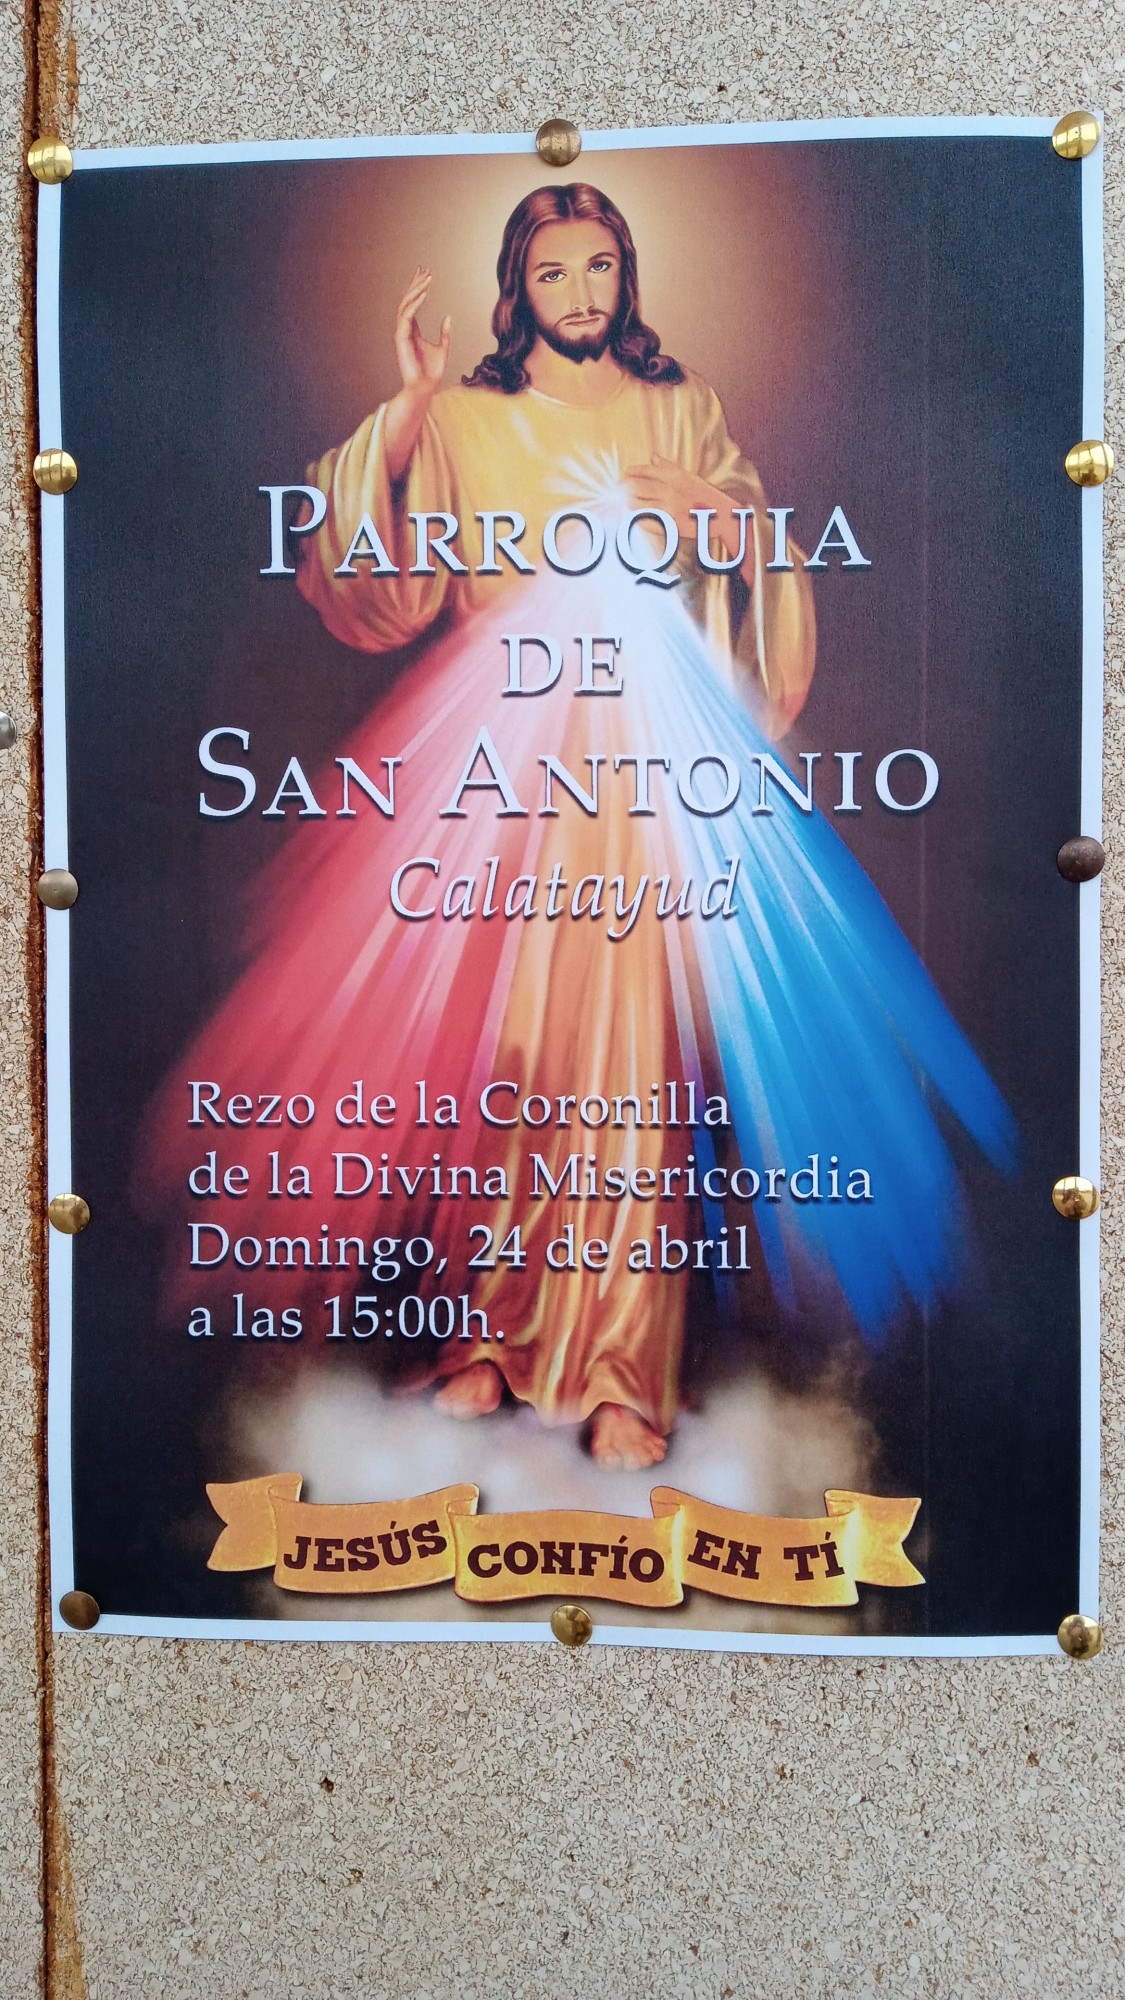 Foto: Parroquia de San Antonio - Calatayud (Zaragoza), España